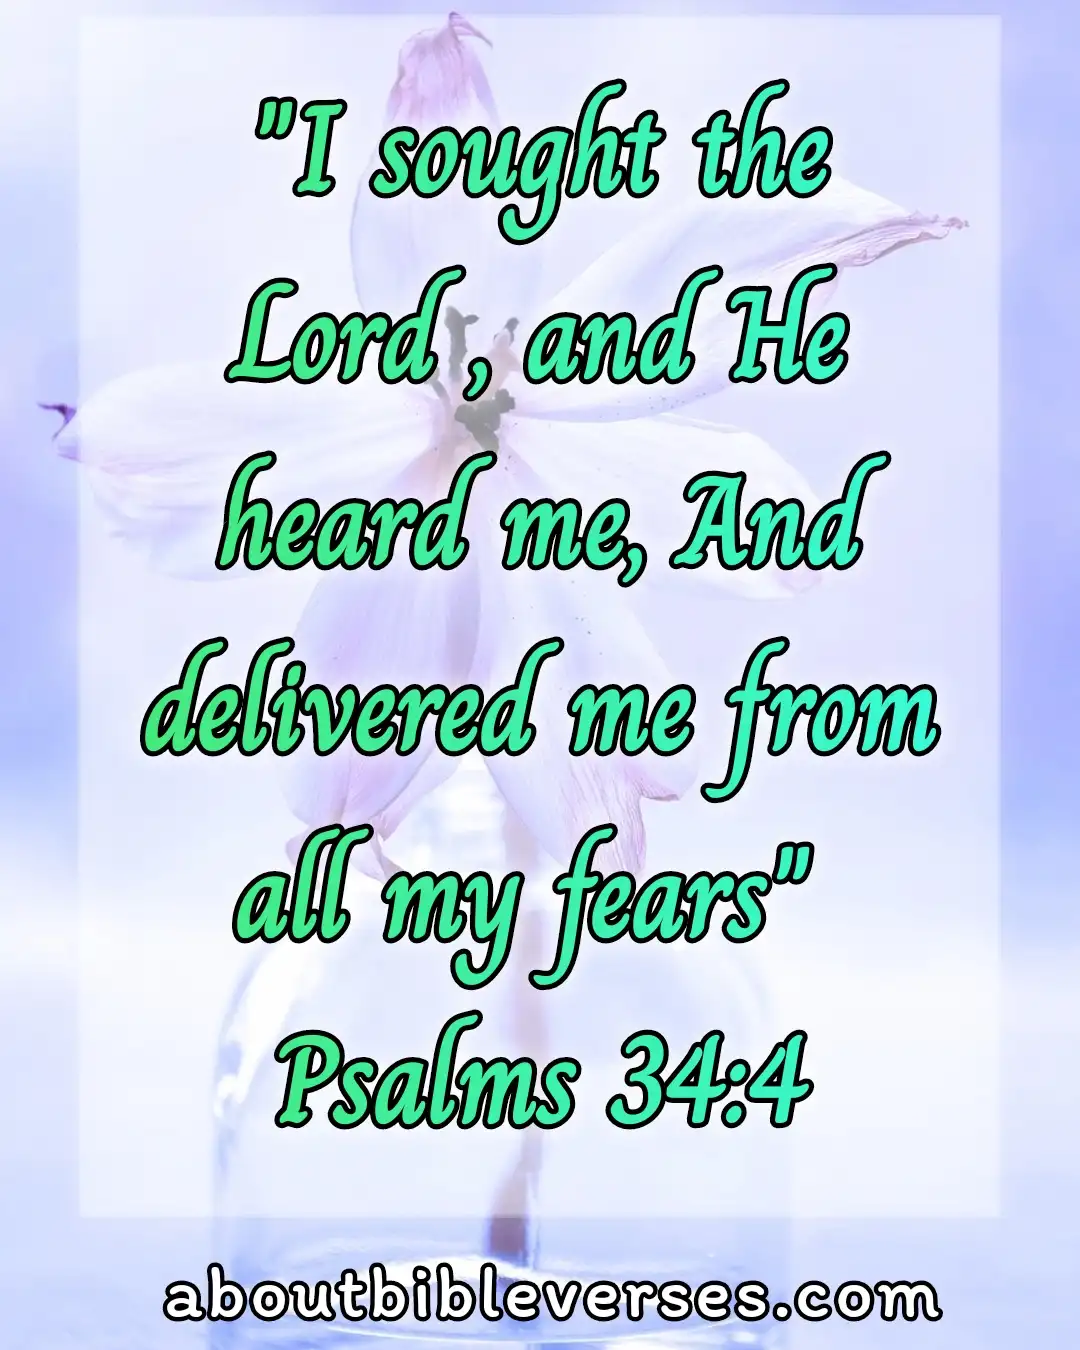 Bible Verses about Seeking God (Psalm 34:4)